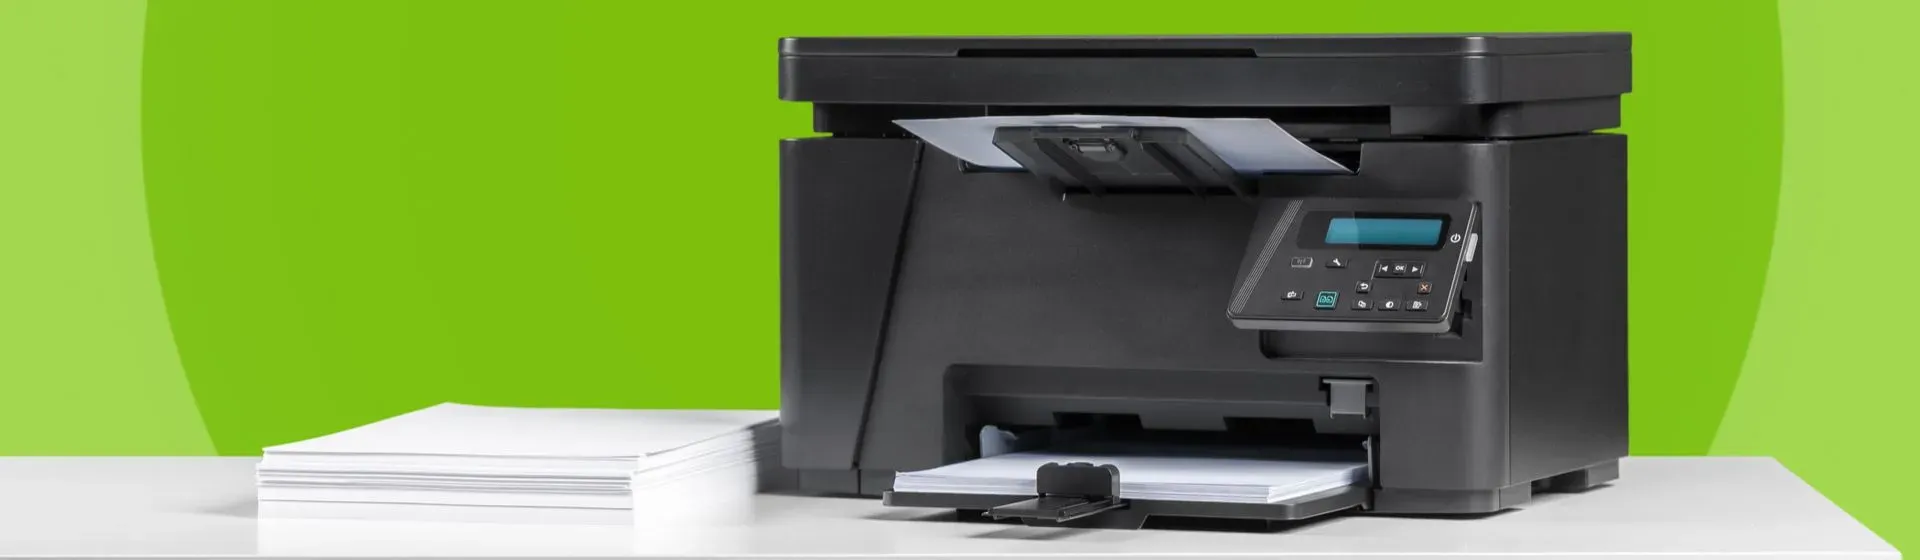 Melhor impressora tanque de tinta em 2021: 9 modelos para comprar